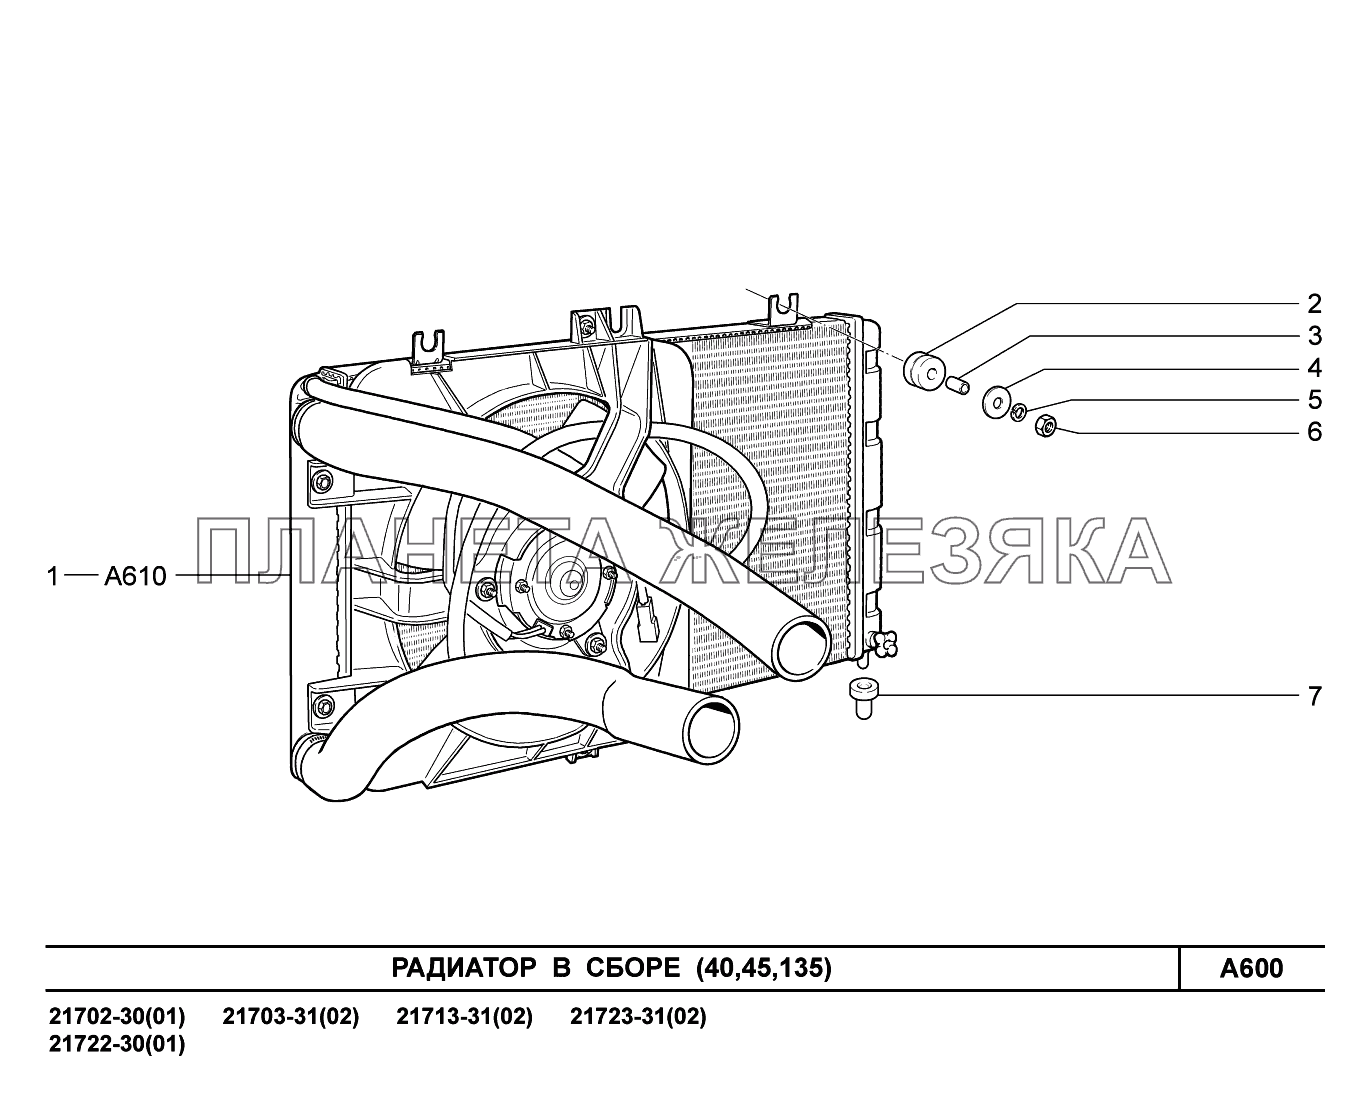 A600. Радиатор в сборе ВАЗ-2170 